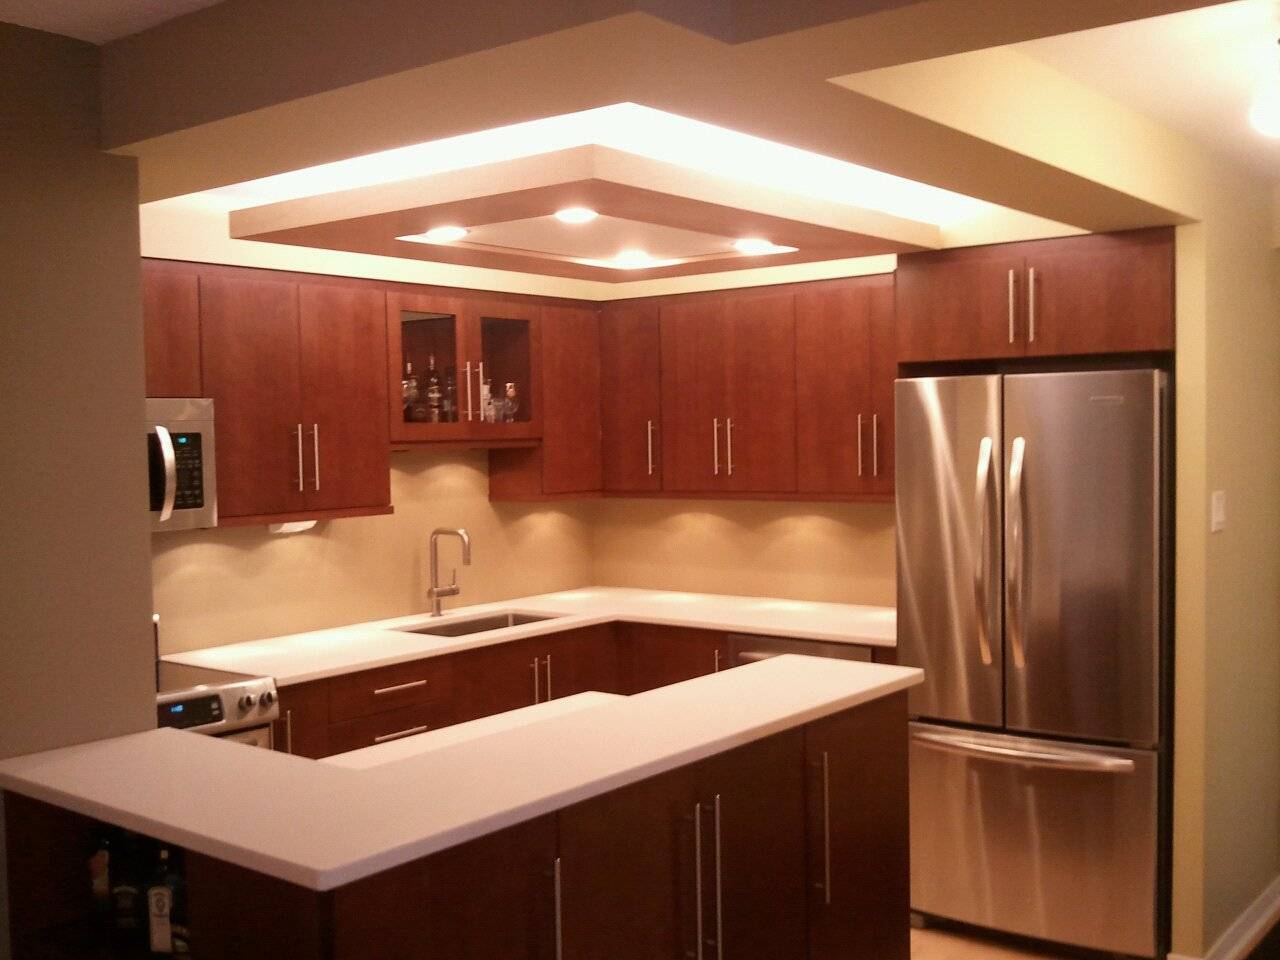 Потолок на кухне из гипсокартона - варианты дизайна отделки
потолок на кухне из гипсокартона - варианты дизайна отделки